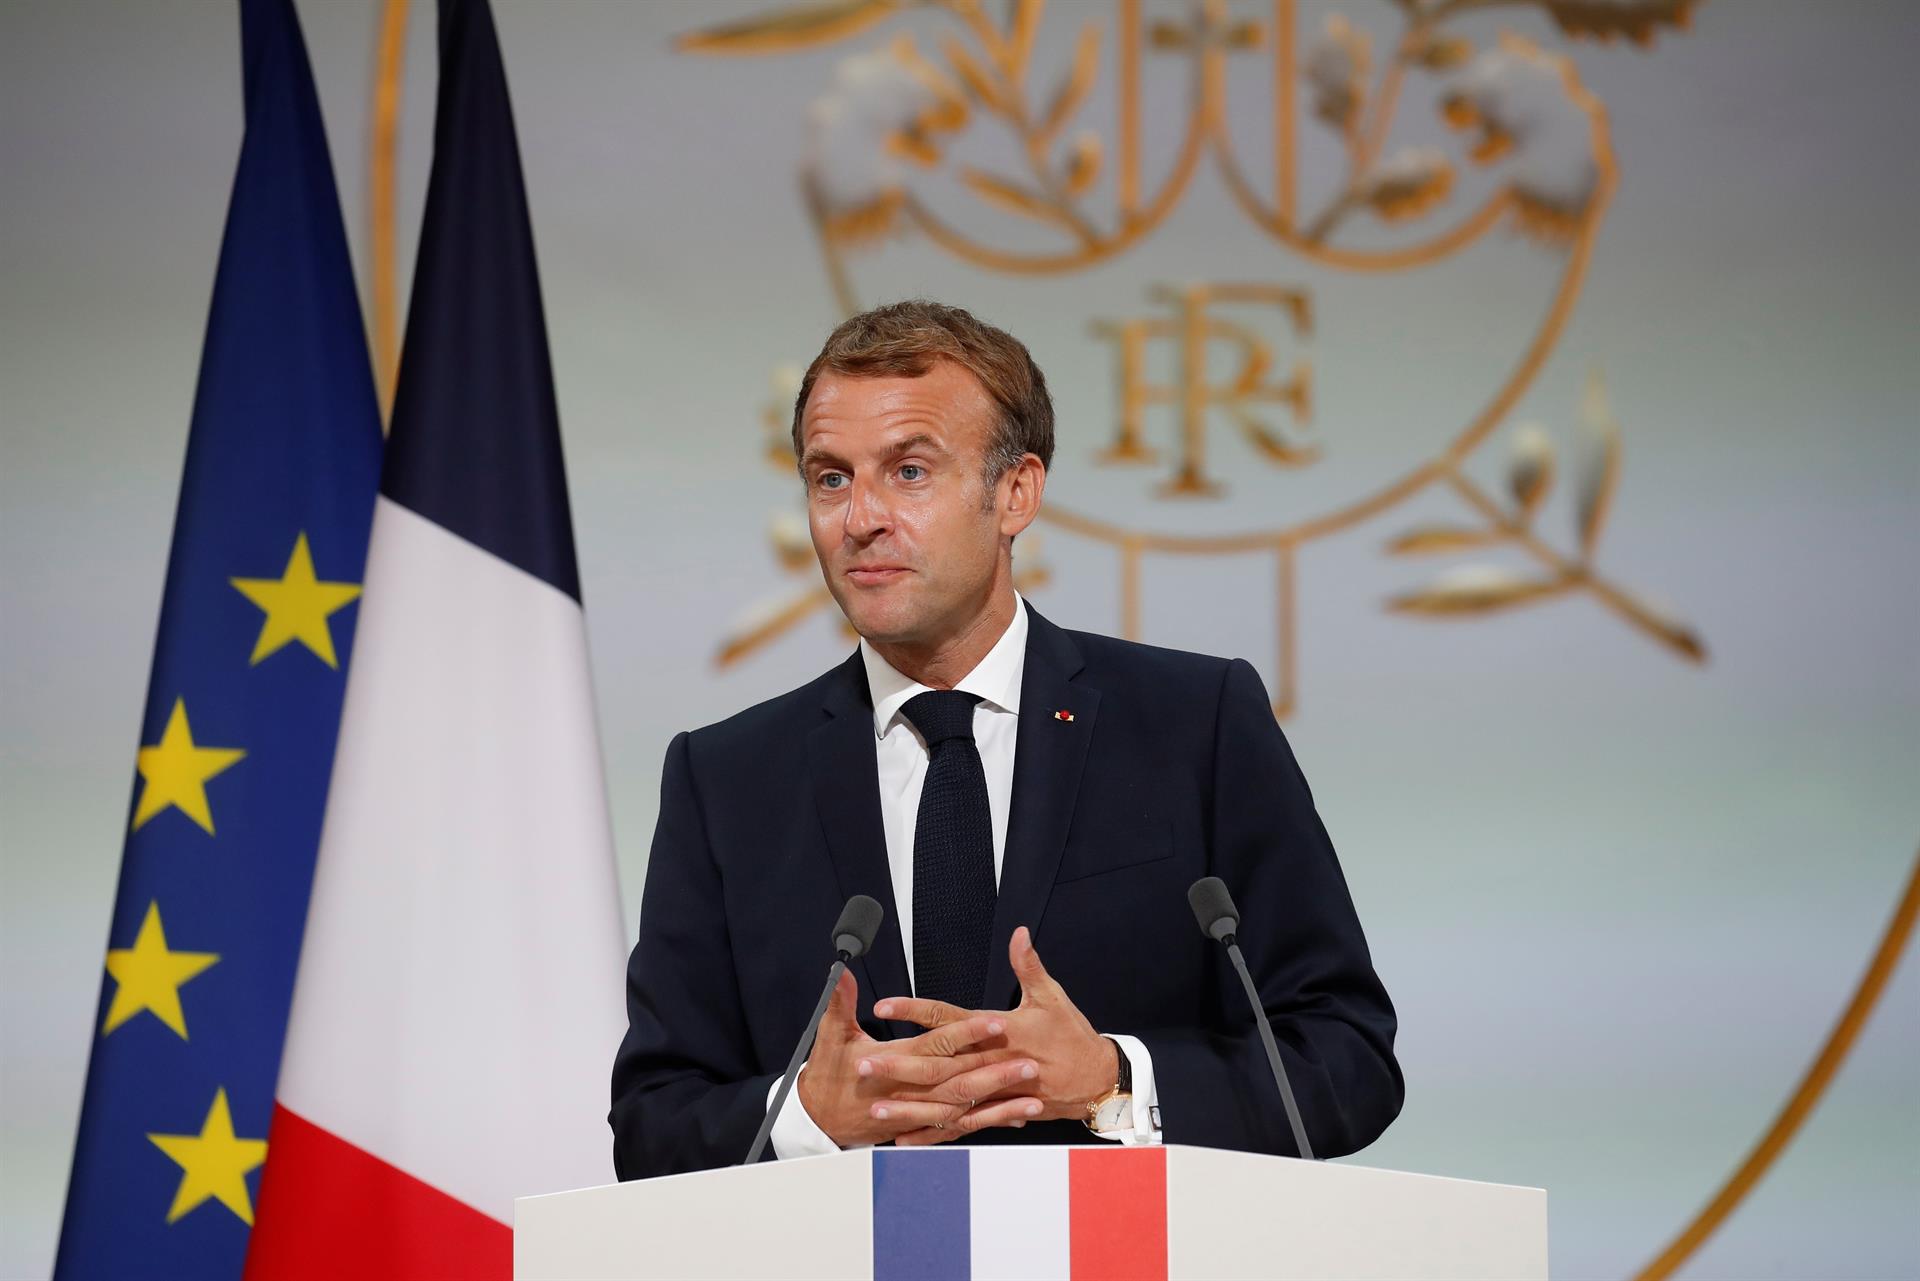 Dimite un ministro de Macron, condenado por mentir sobre su patrimonio